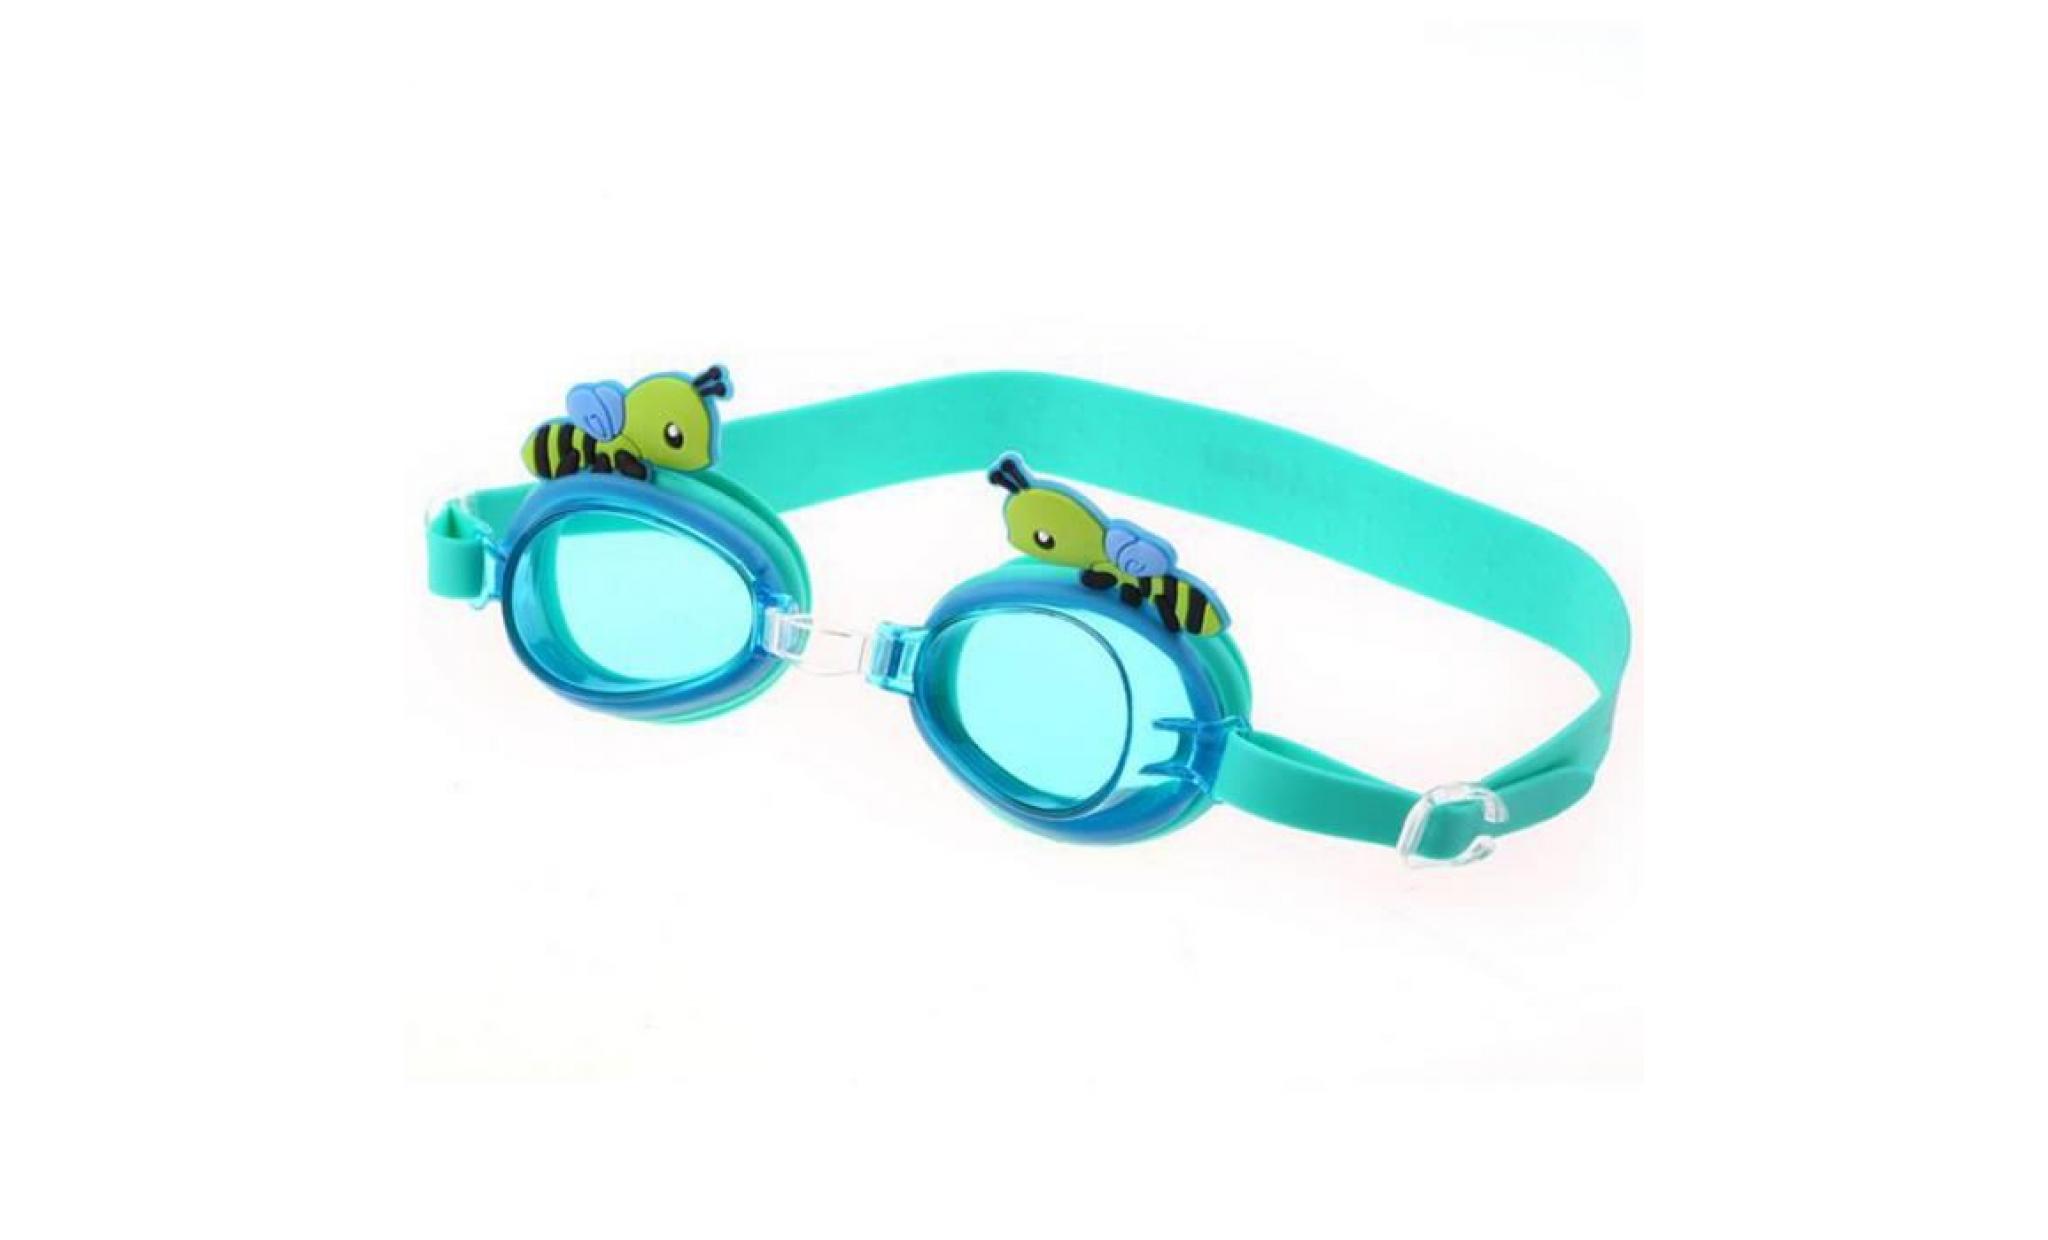 bleu clair cartoon abeilles enfants etanche anti fog protection uv swim piscine silicone lunettes lunettes